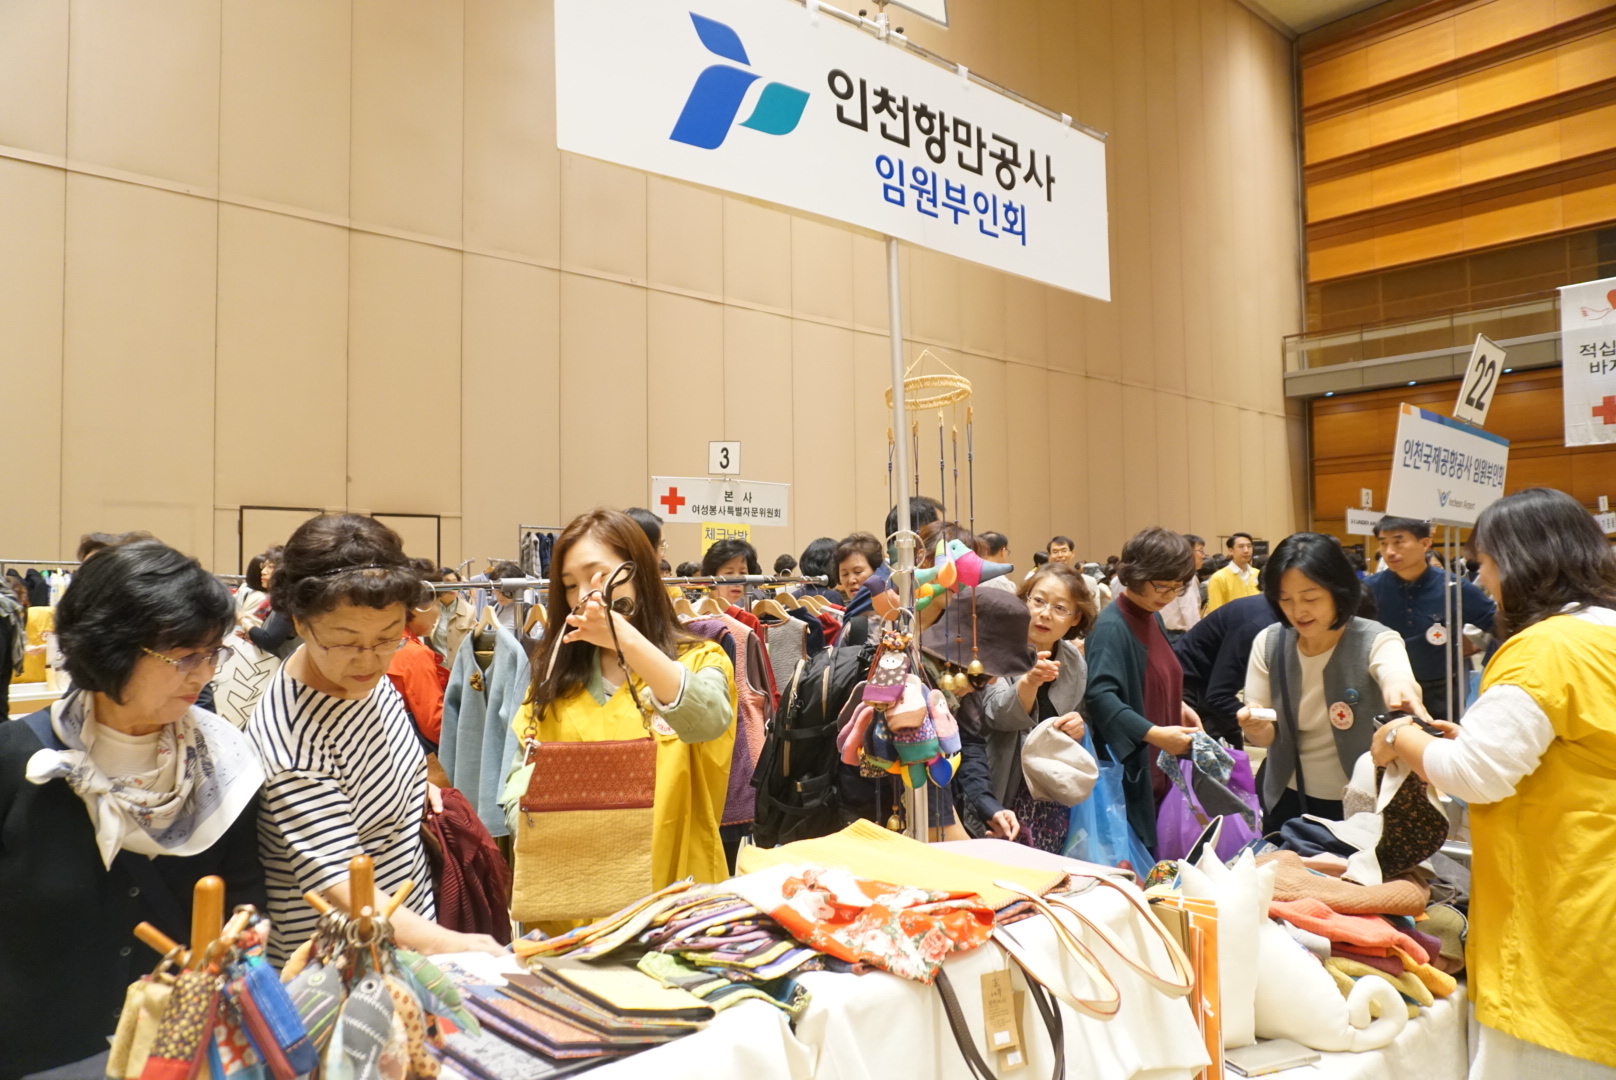 인천항만공사 직원들이 2017 적십자 바자회장에서 다문화 이주 여성이 제작한 제품을 판매하고 있다